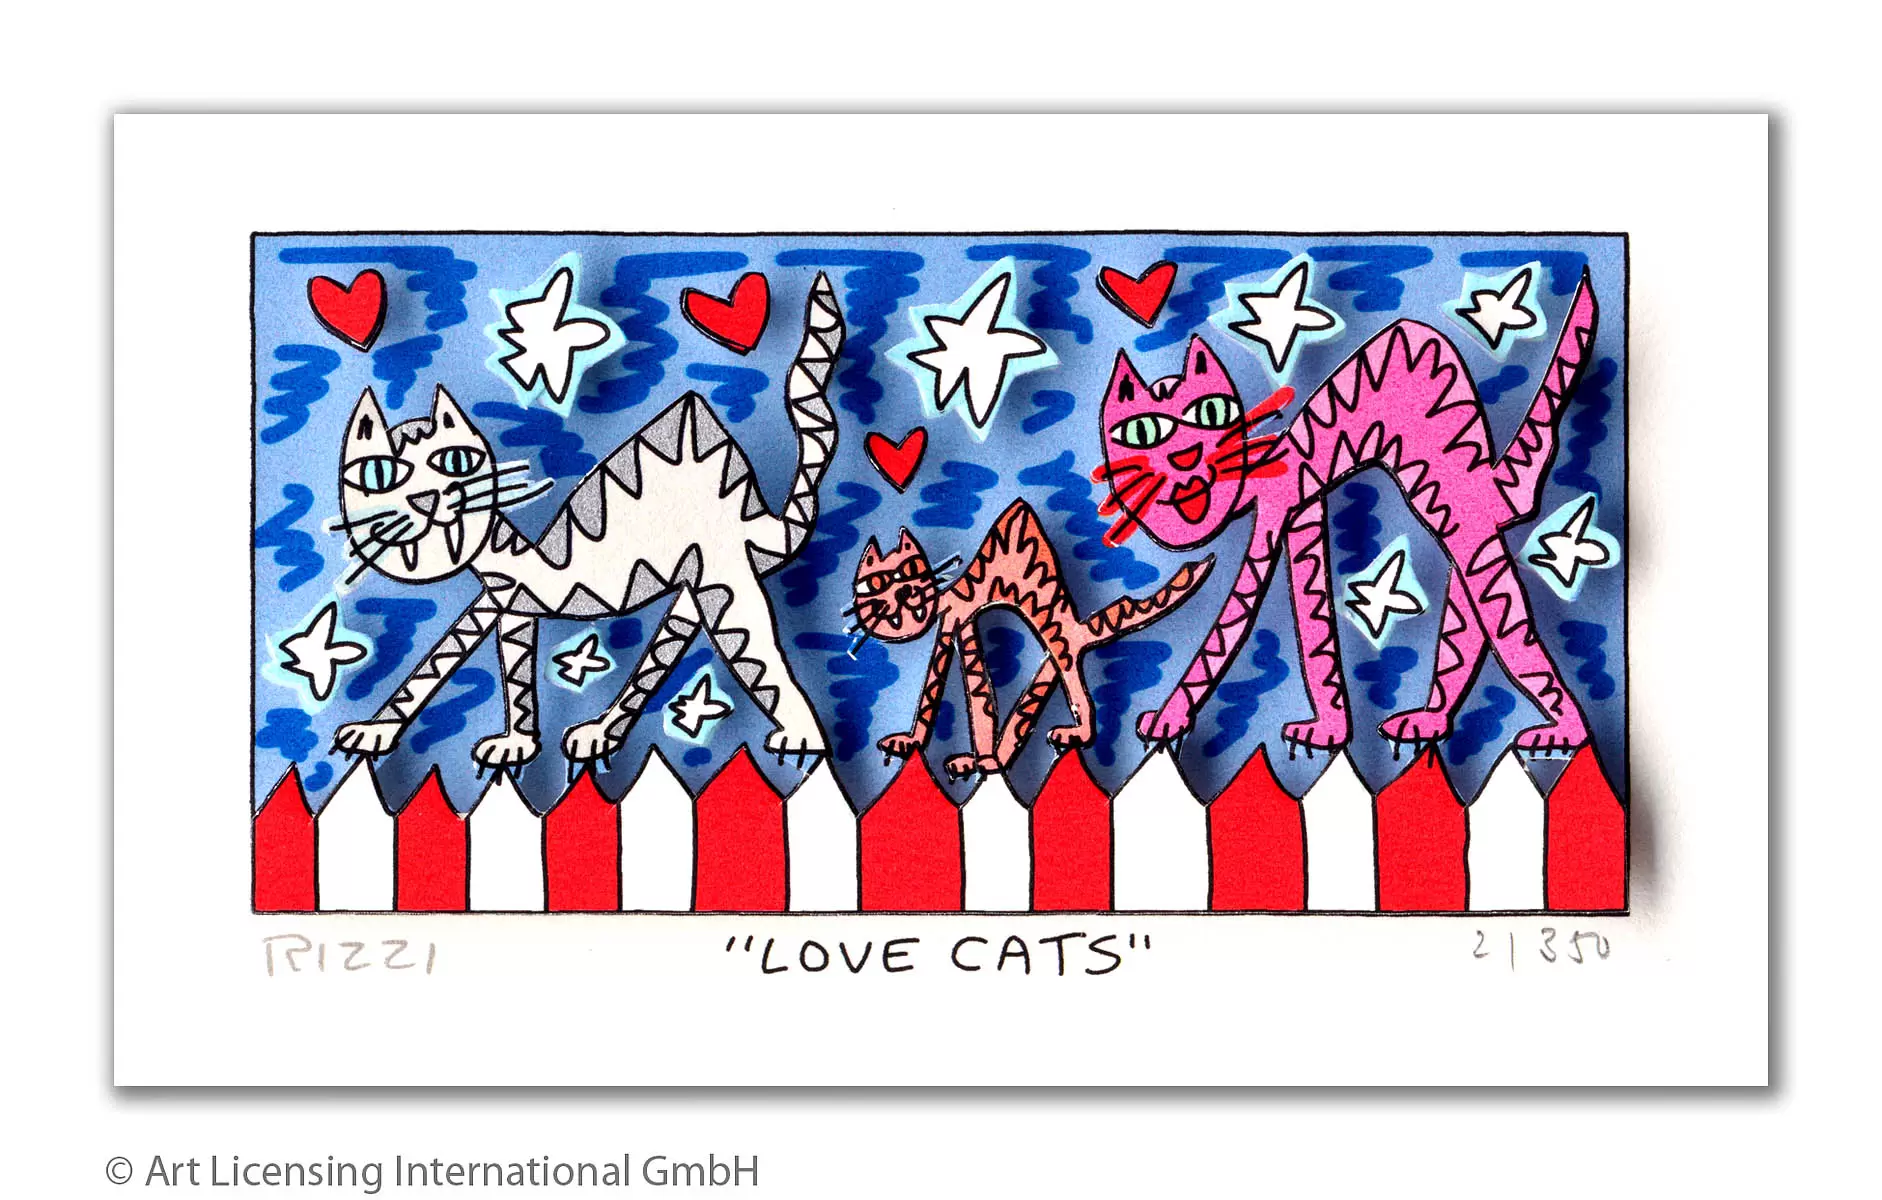 james-rizzi-love-cats-ungerahmt-kunst-3d